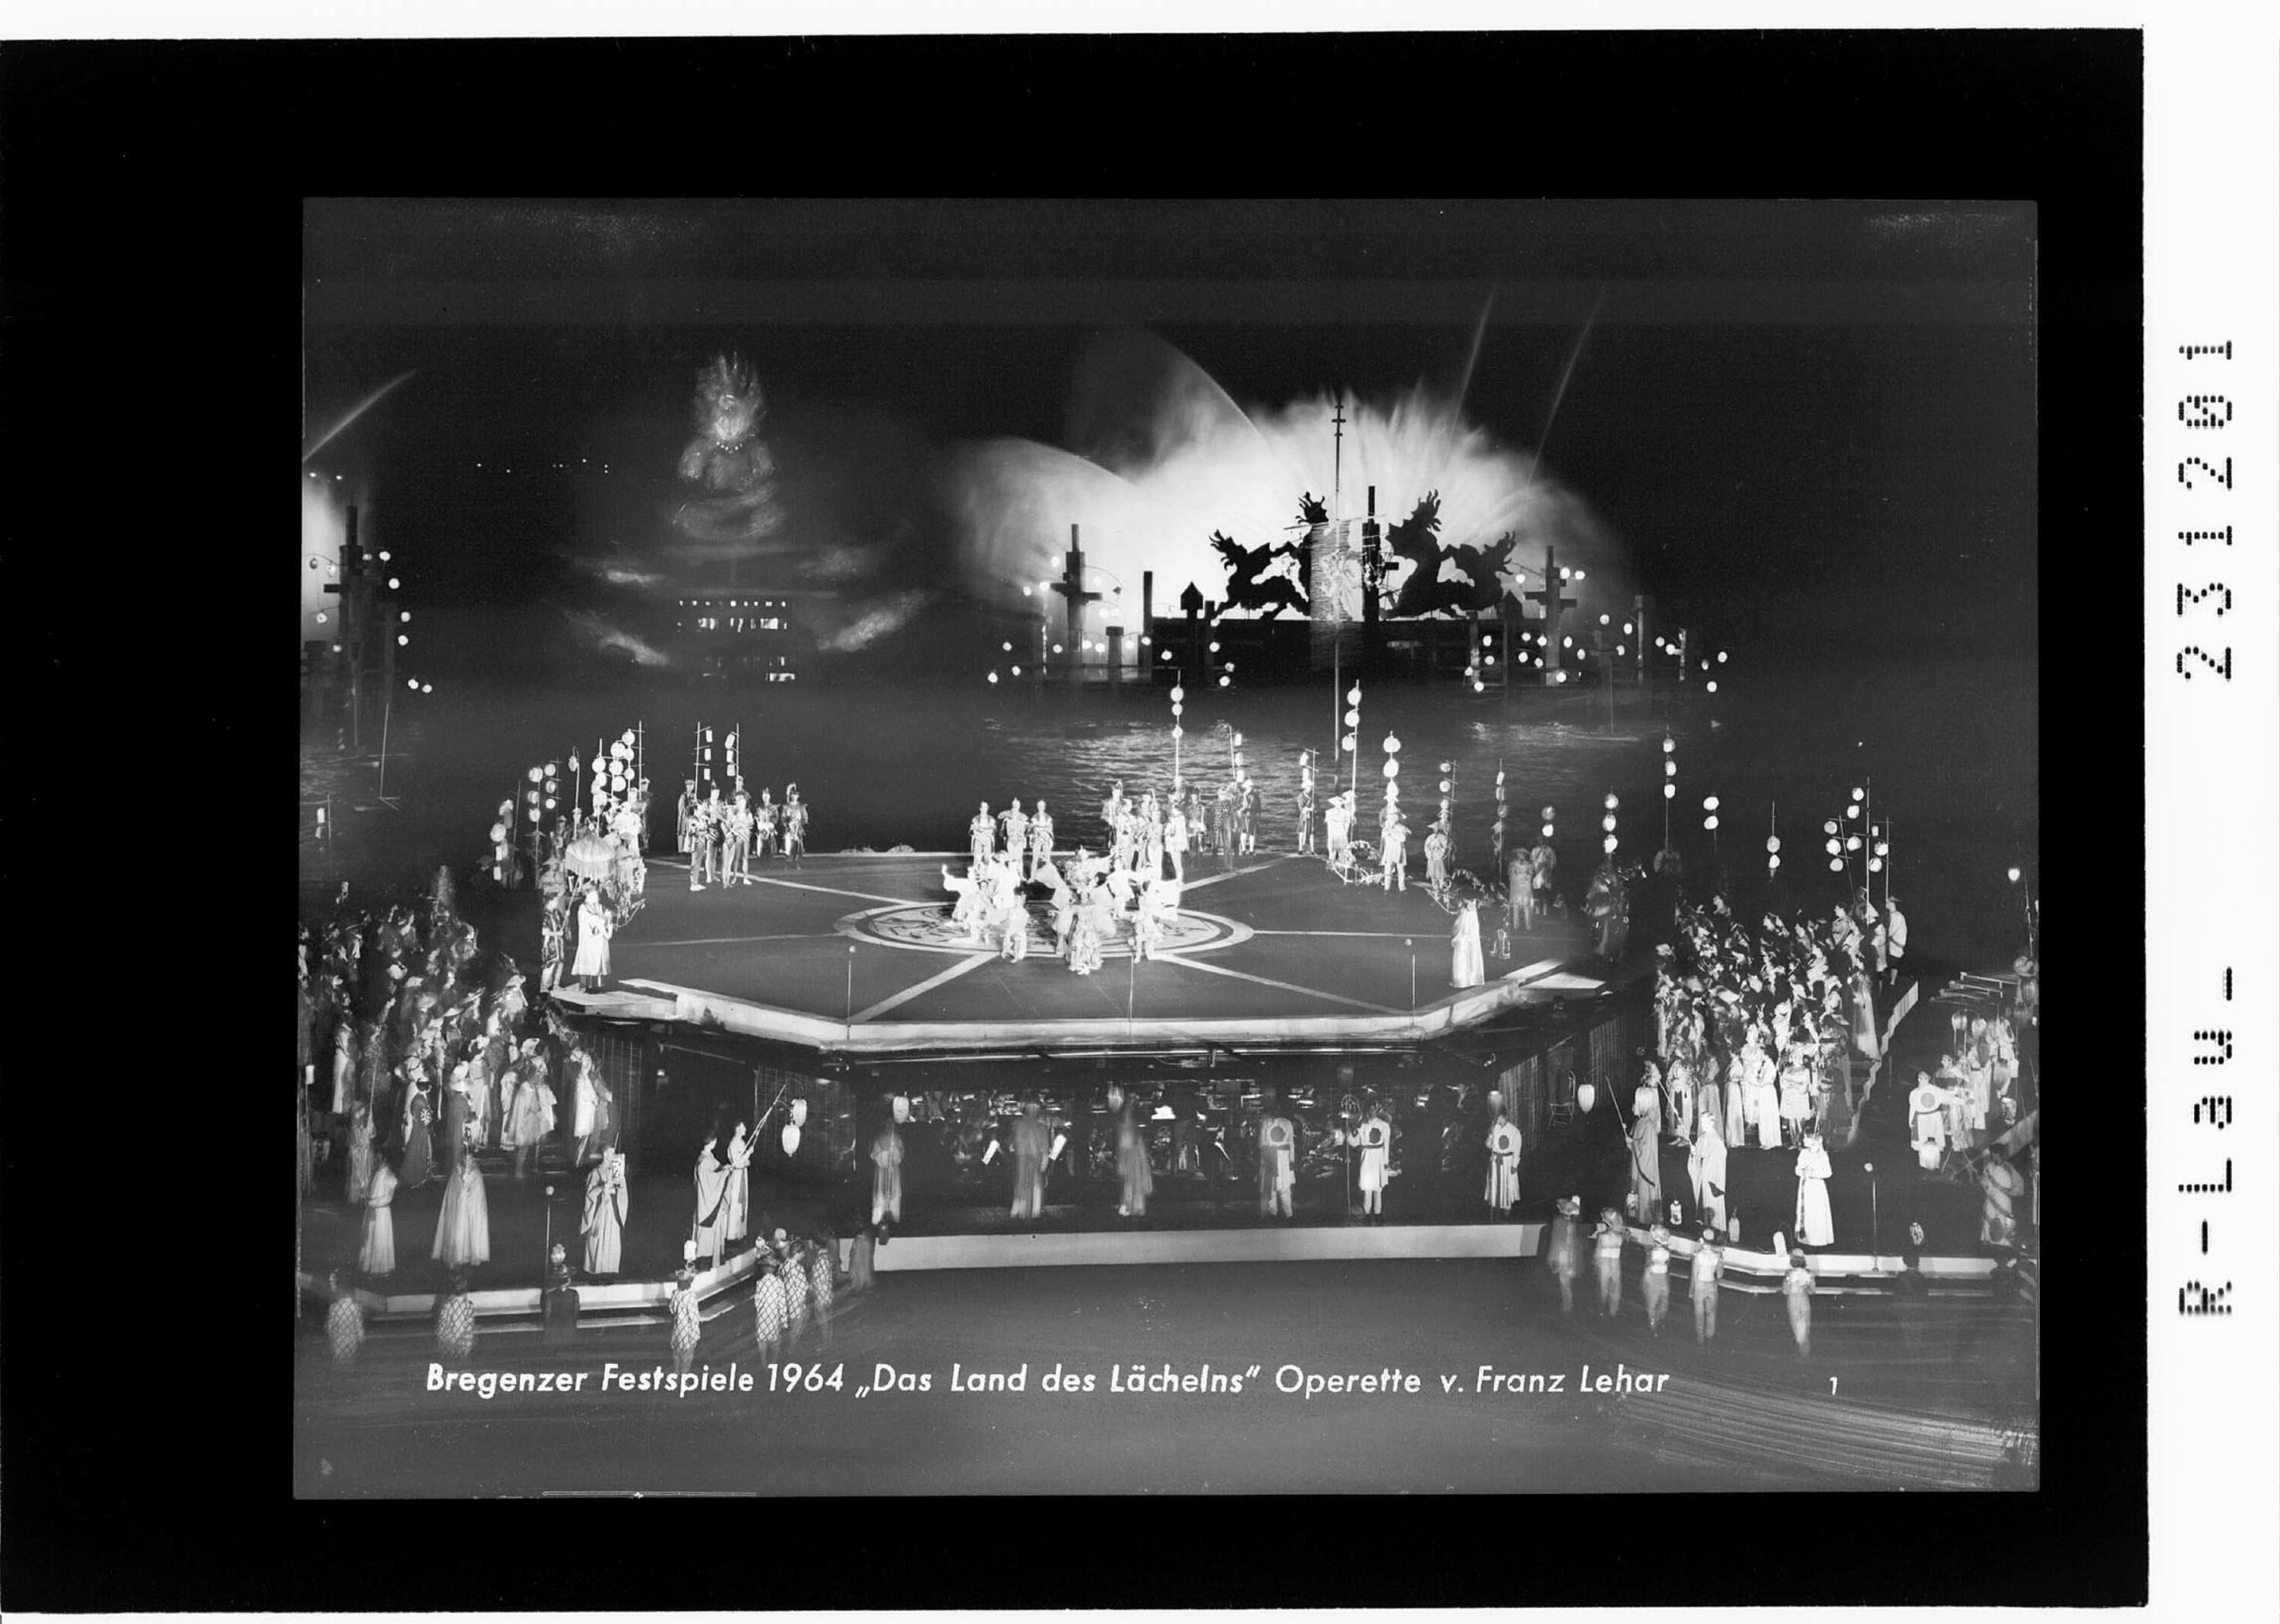 Bregenzer Festspiele 1964 / Das Land des Lächelns - Operette von Franz Lehar></div>


    <hr>
    <div class=